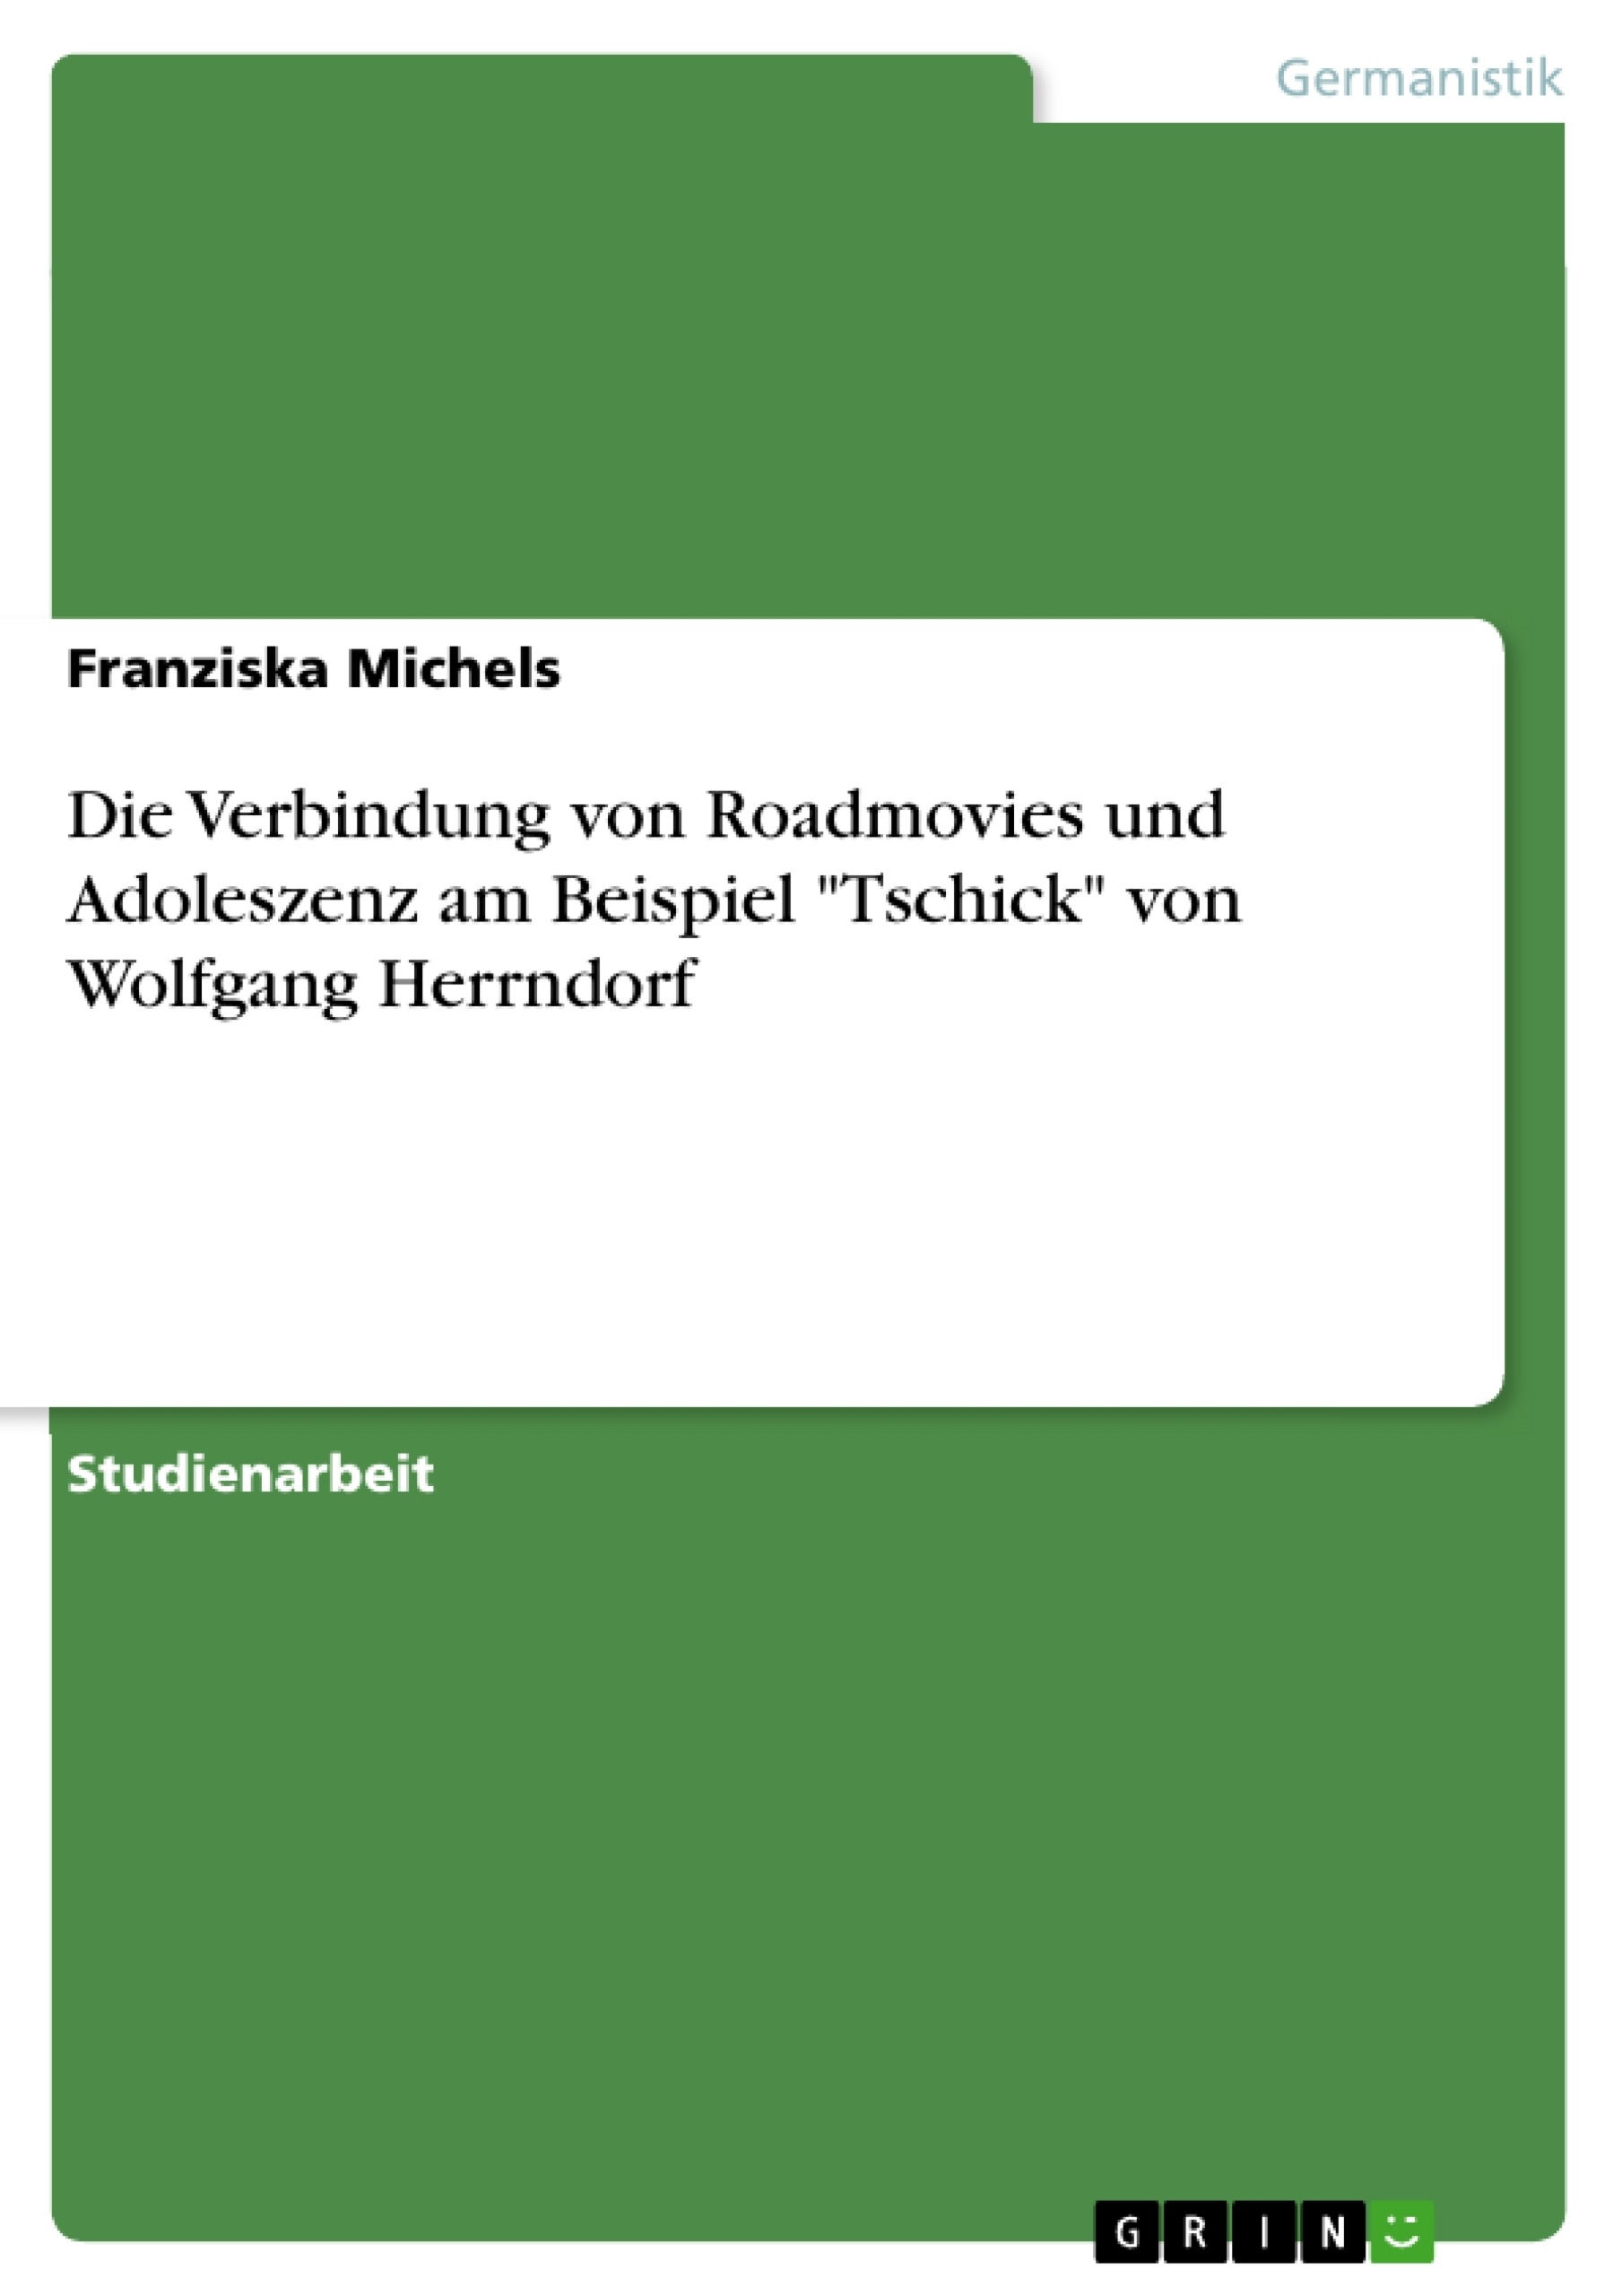 Title: Die Verbindung von Roadmovies und Adoleszenz am Beispiel "Tschick" von Wolfgang Herrndorf